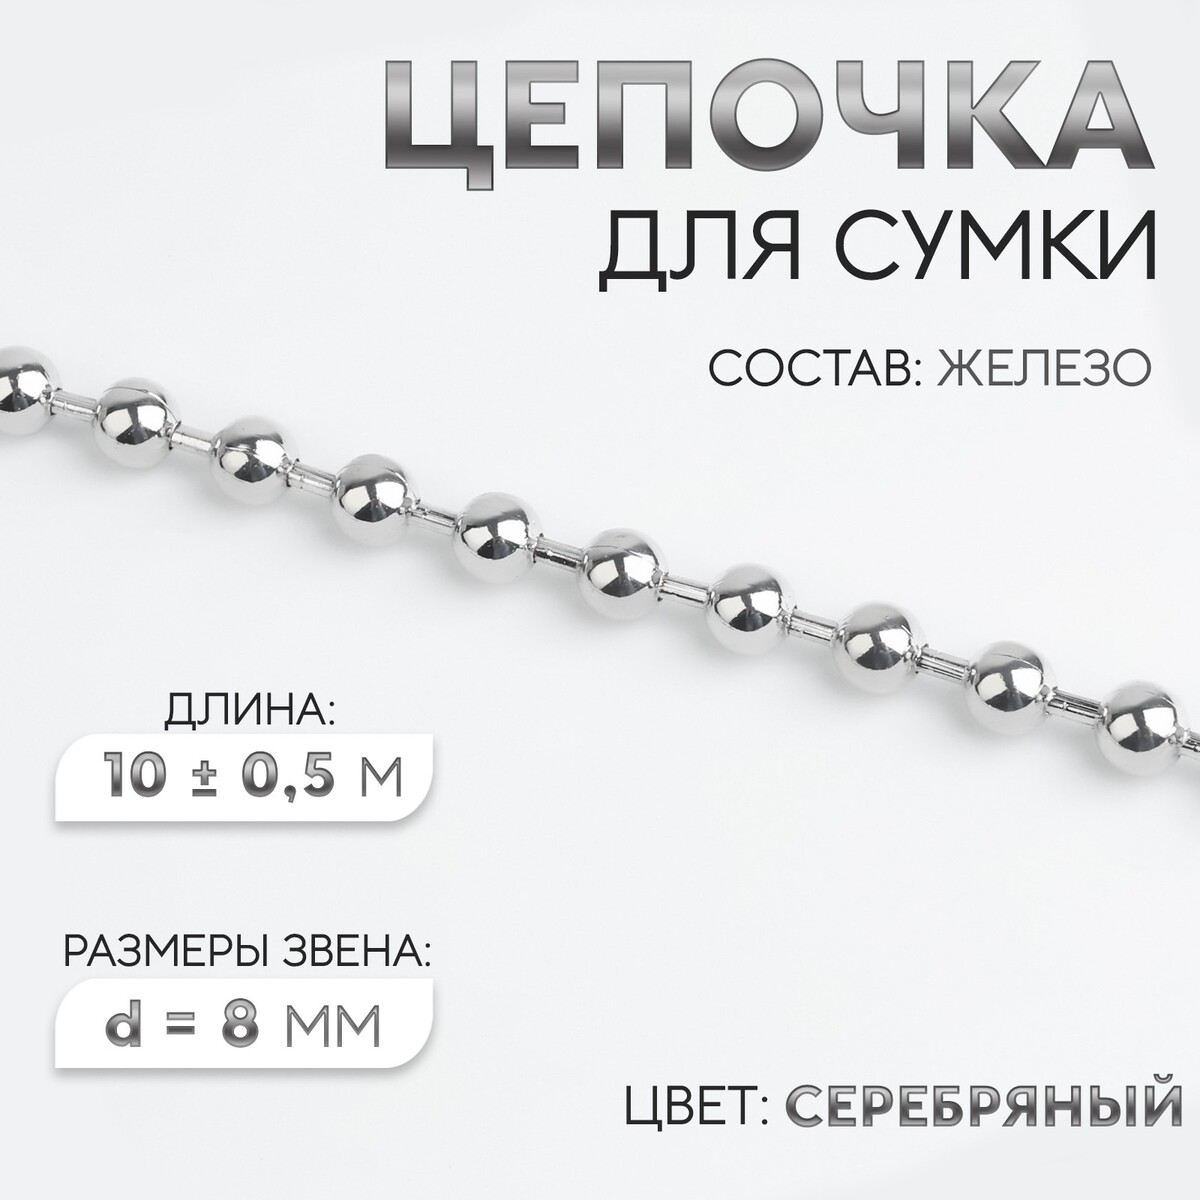 Цепочка для сумки, железная, d = 8 мм, 10 ± 0,5 м, цвет серебряный цепочка для сумки железная 7 × 5 мм 10 ± 0 5 м серебряный